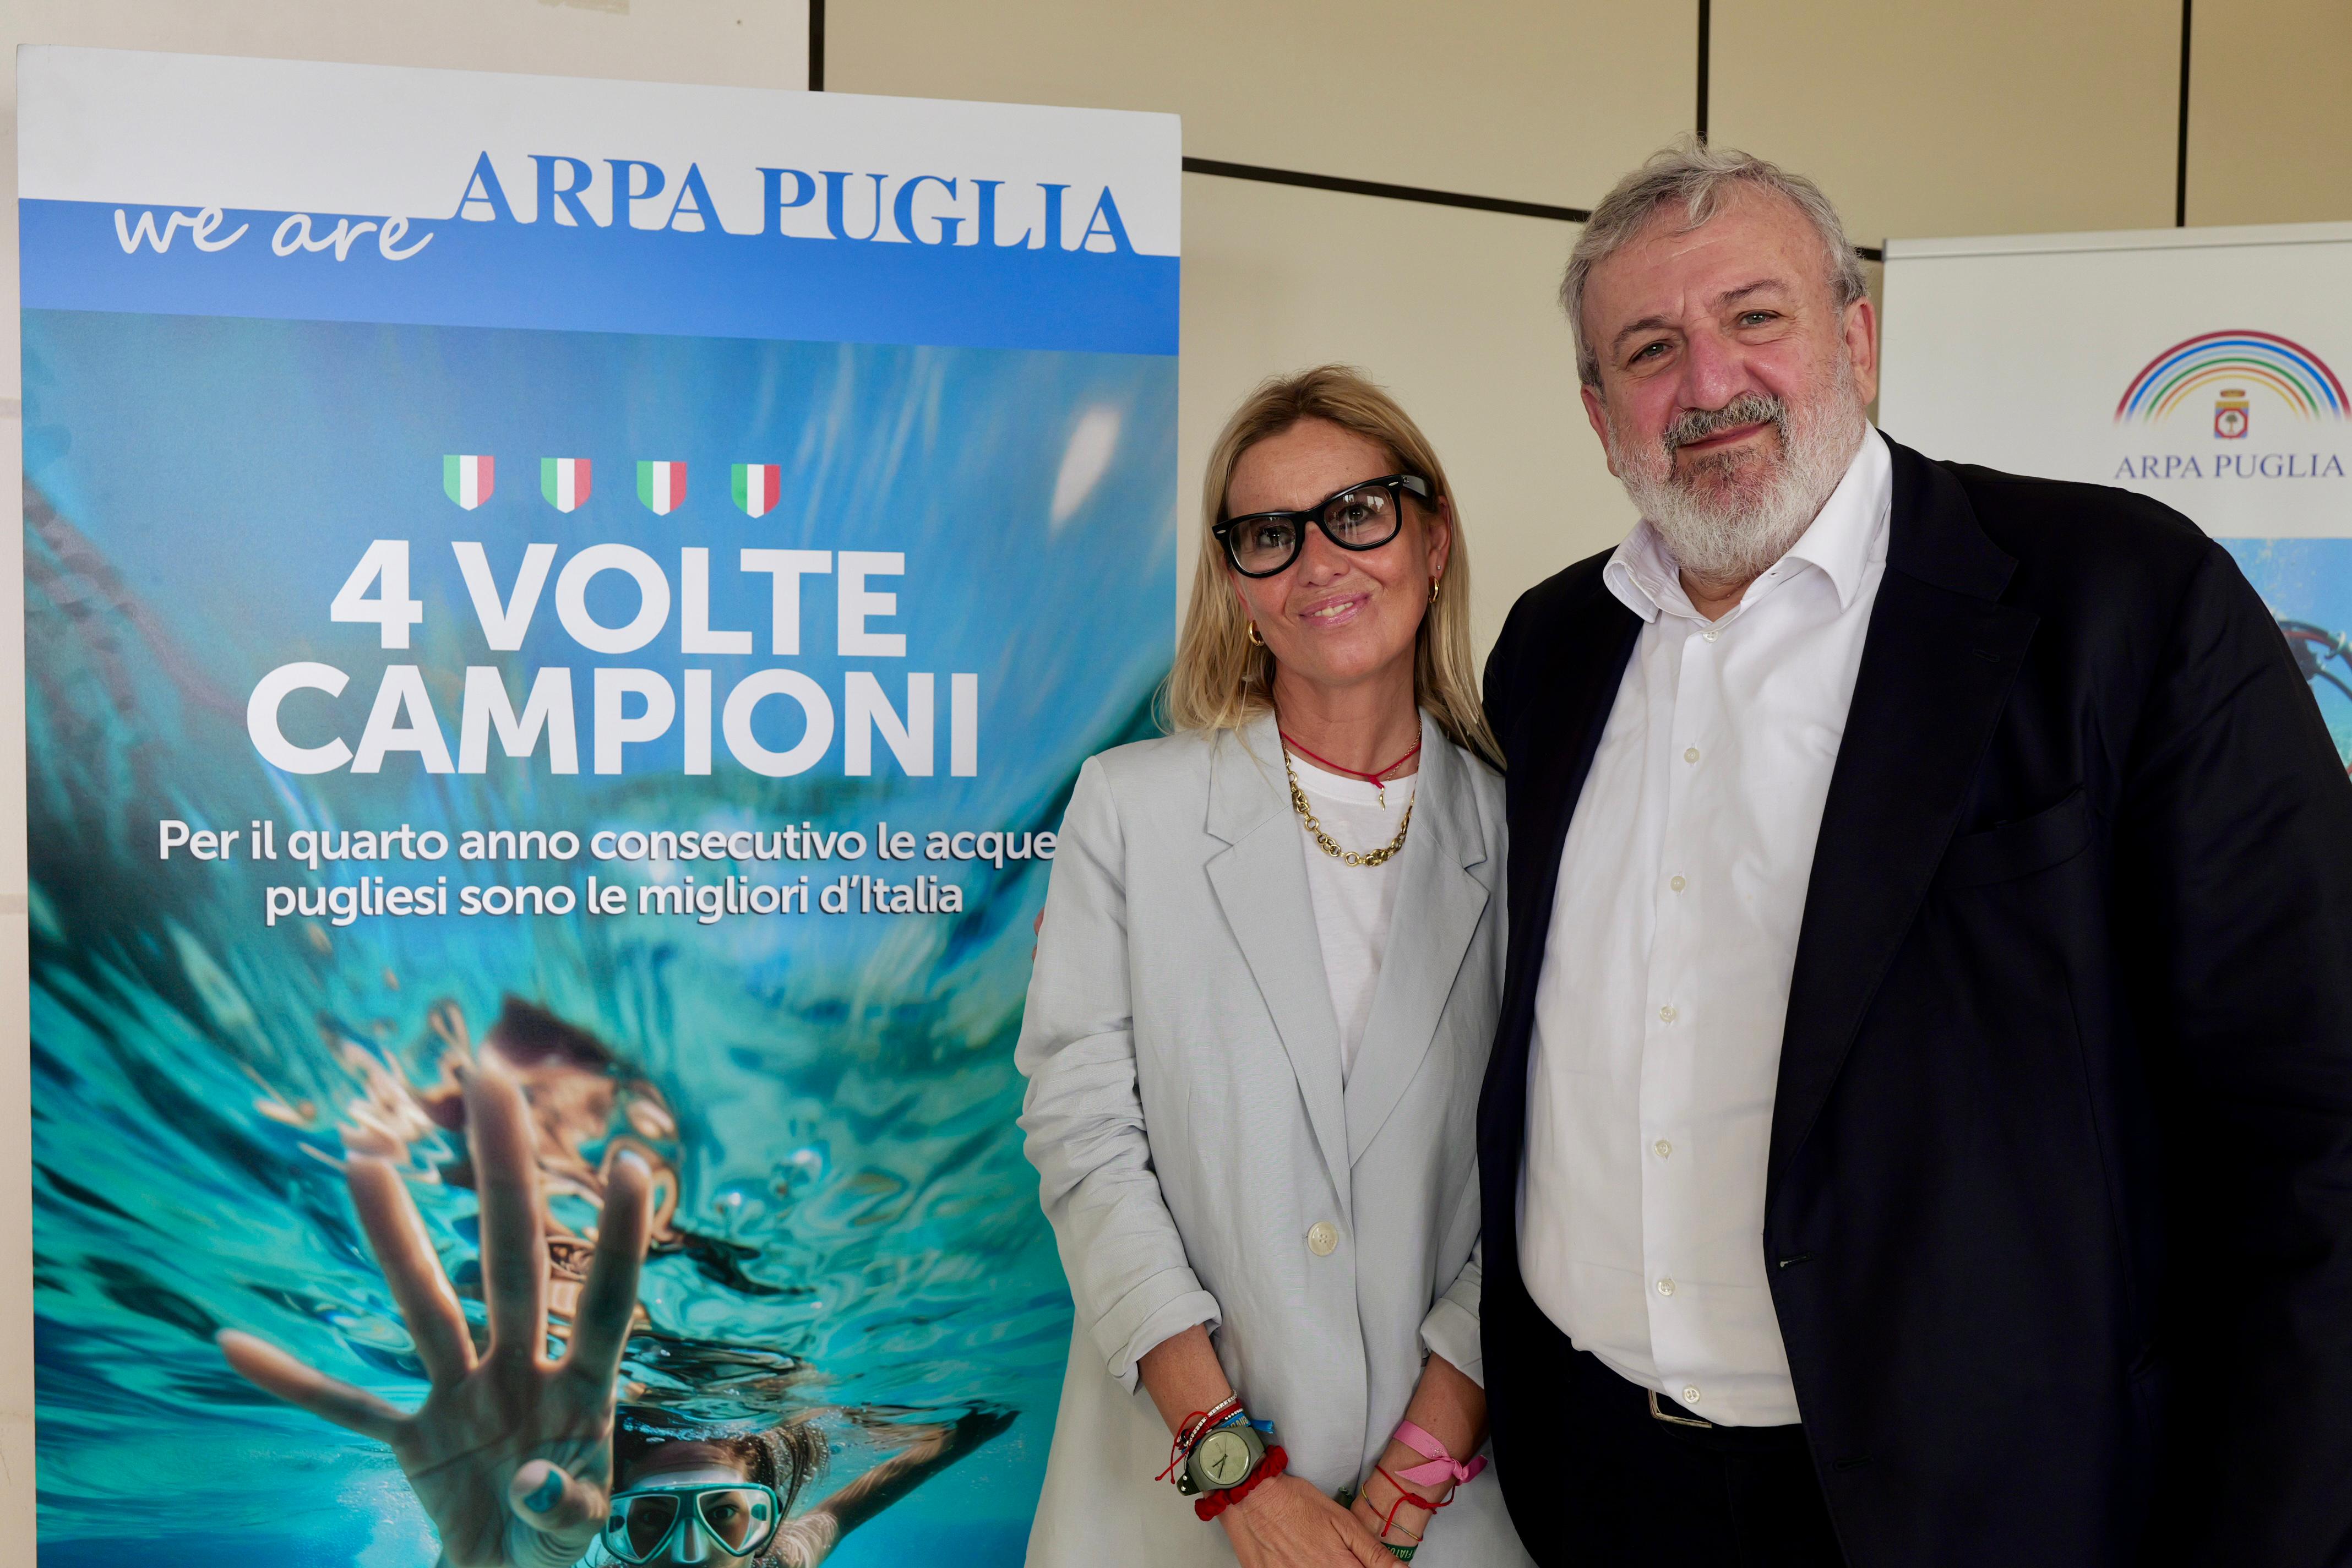 Galleria Puglia prima in Italia per la qualità delle acque di balneazione per il quarto anno consecutivo secondo i dati del Sistema nazionale per la protezione dell’ambiente - Diapositiva 3 di 9